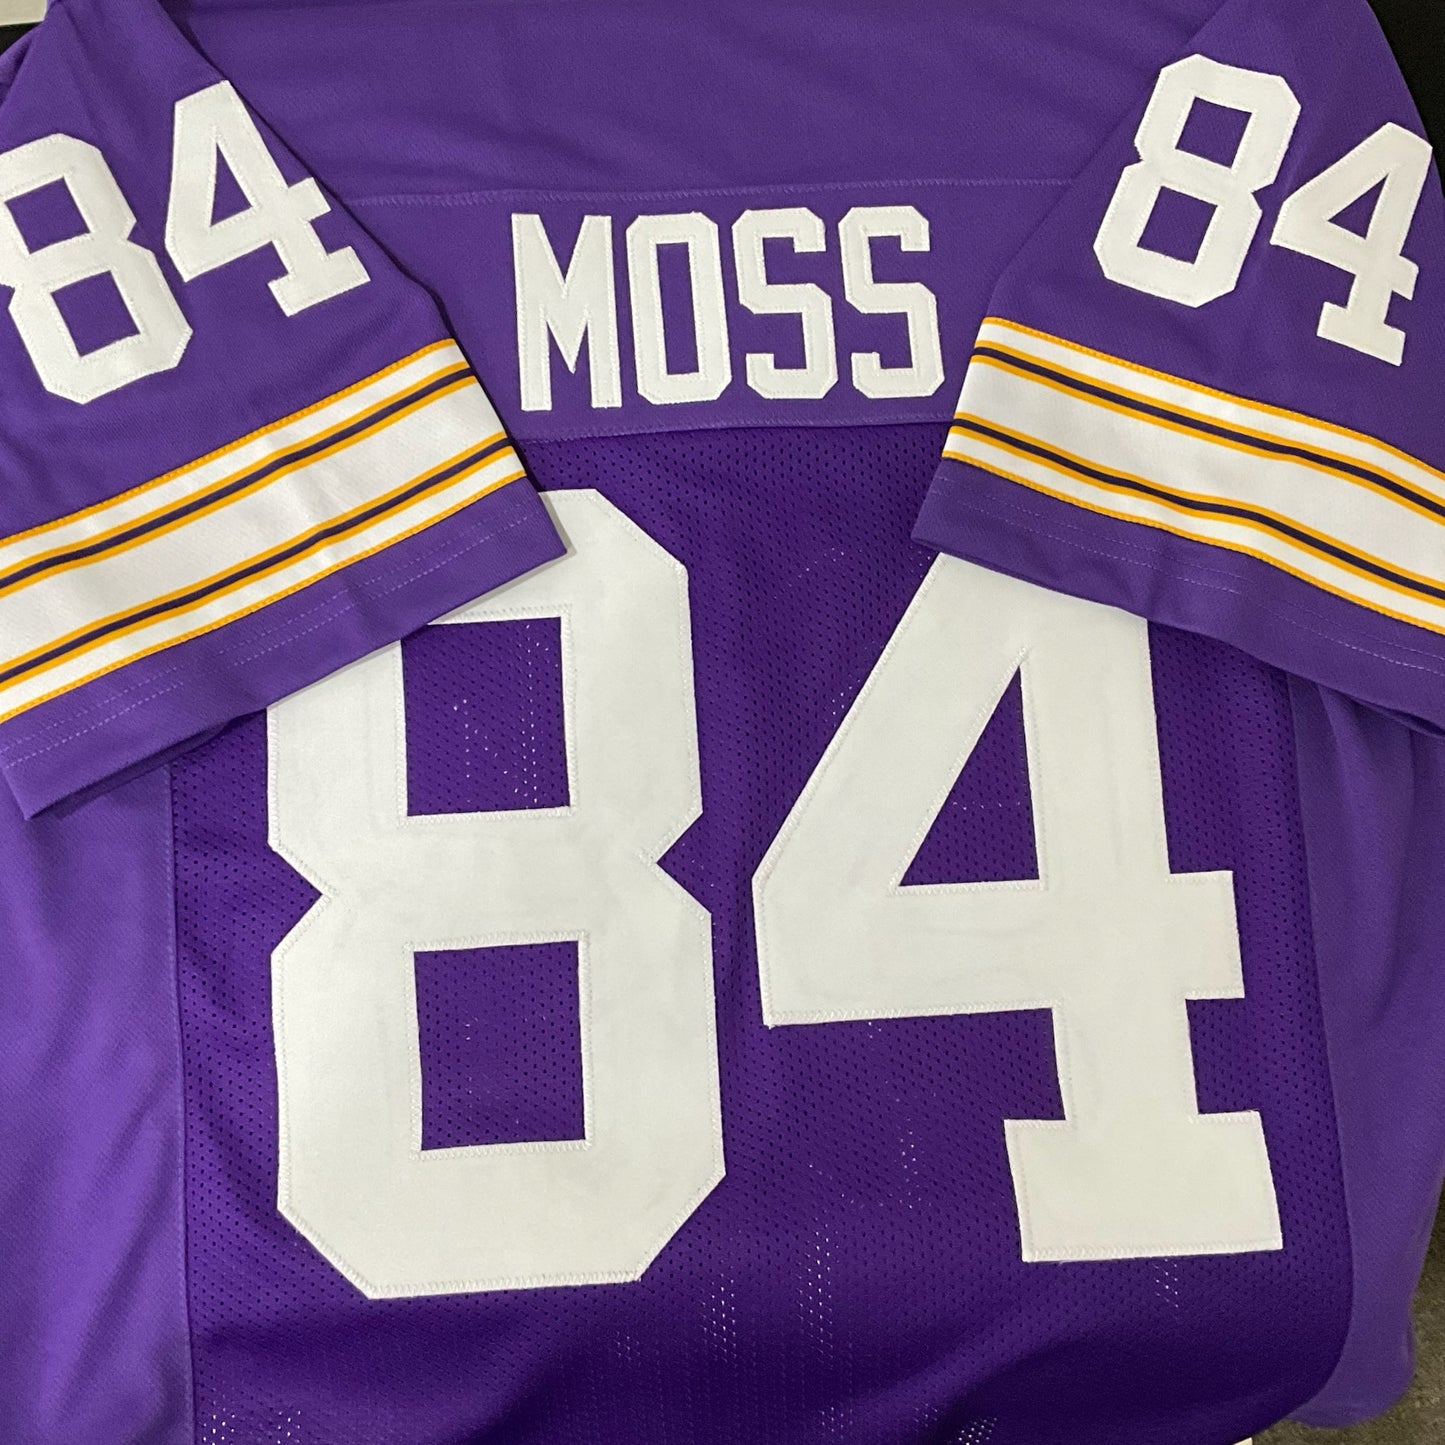 Randy Moss Jersey Purple Minnesota | M-5XL Sewn Stitch